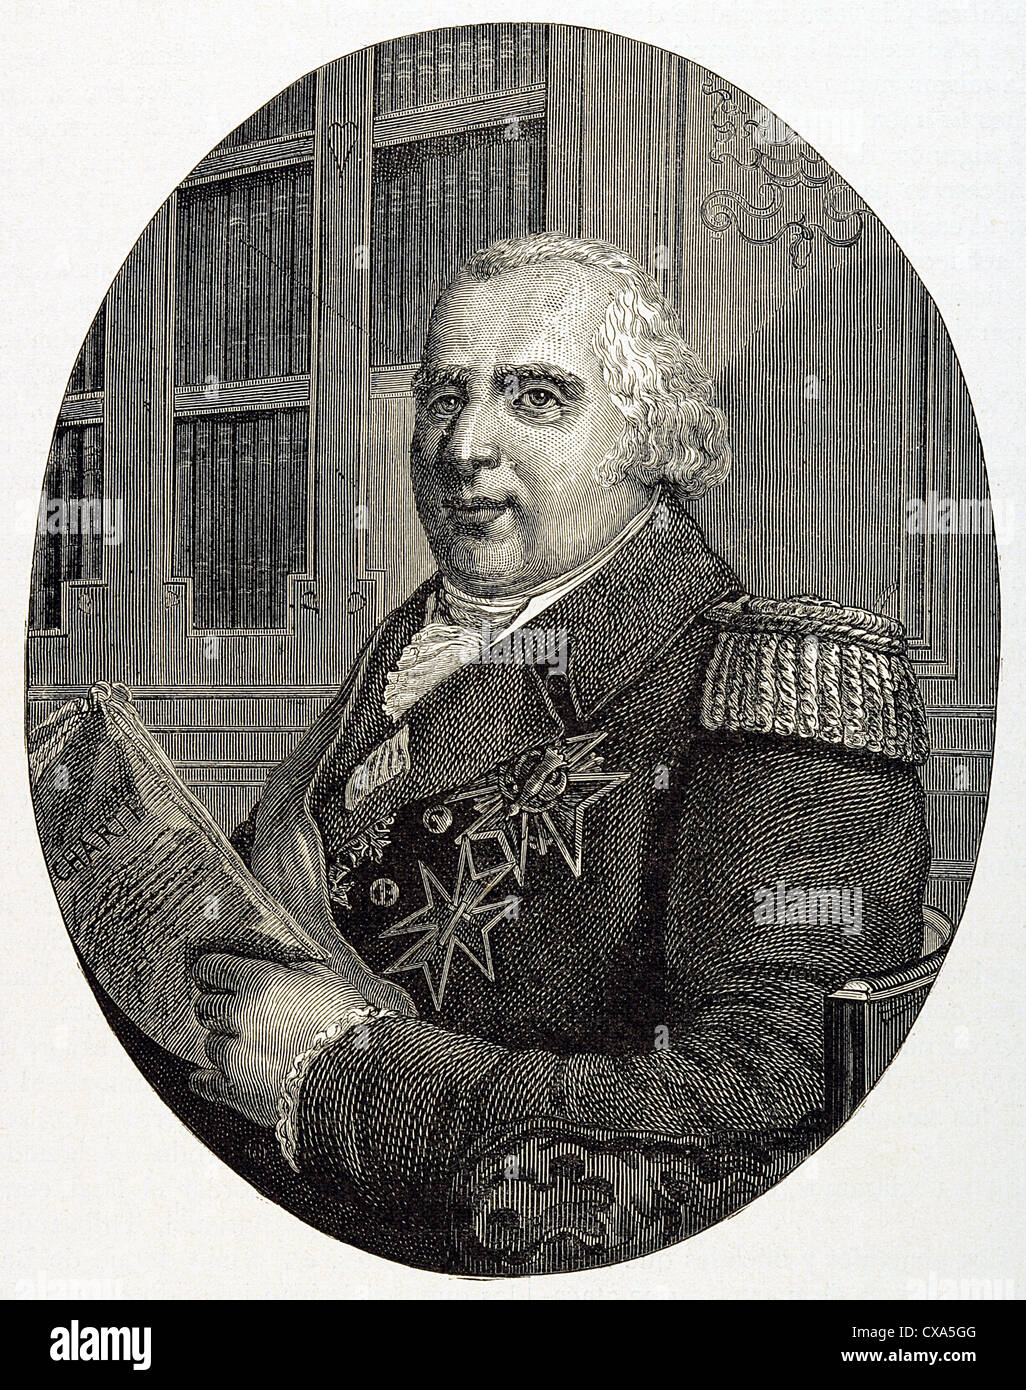 Louis XVIII (1755-1824). König von Frankreich von 1814 / 15 und 1815-24. Bruder von Ludwig XVI. Gravur. Stockfoto